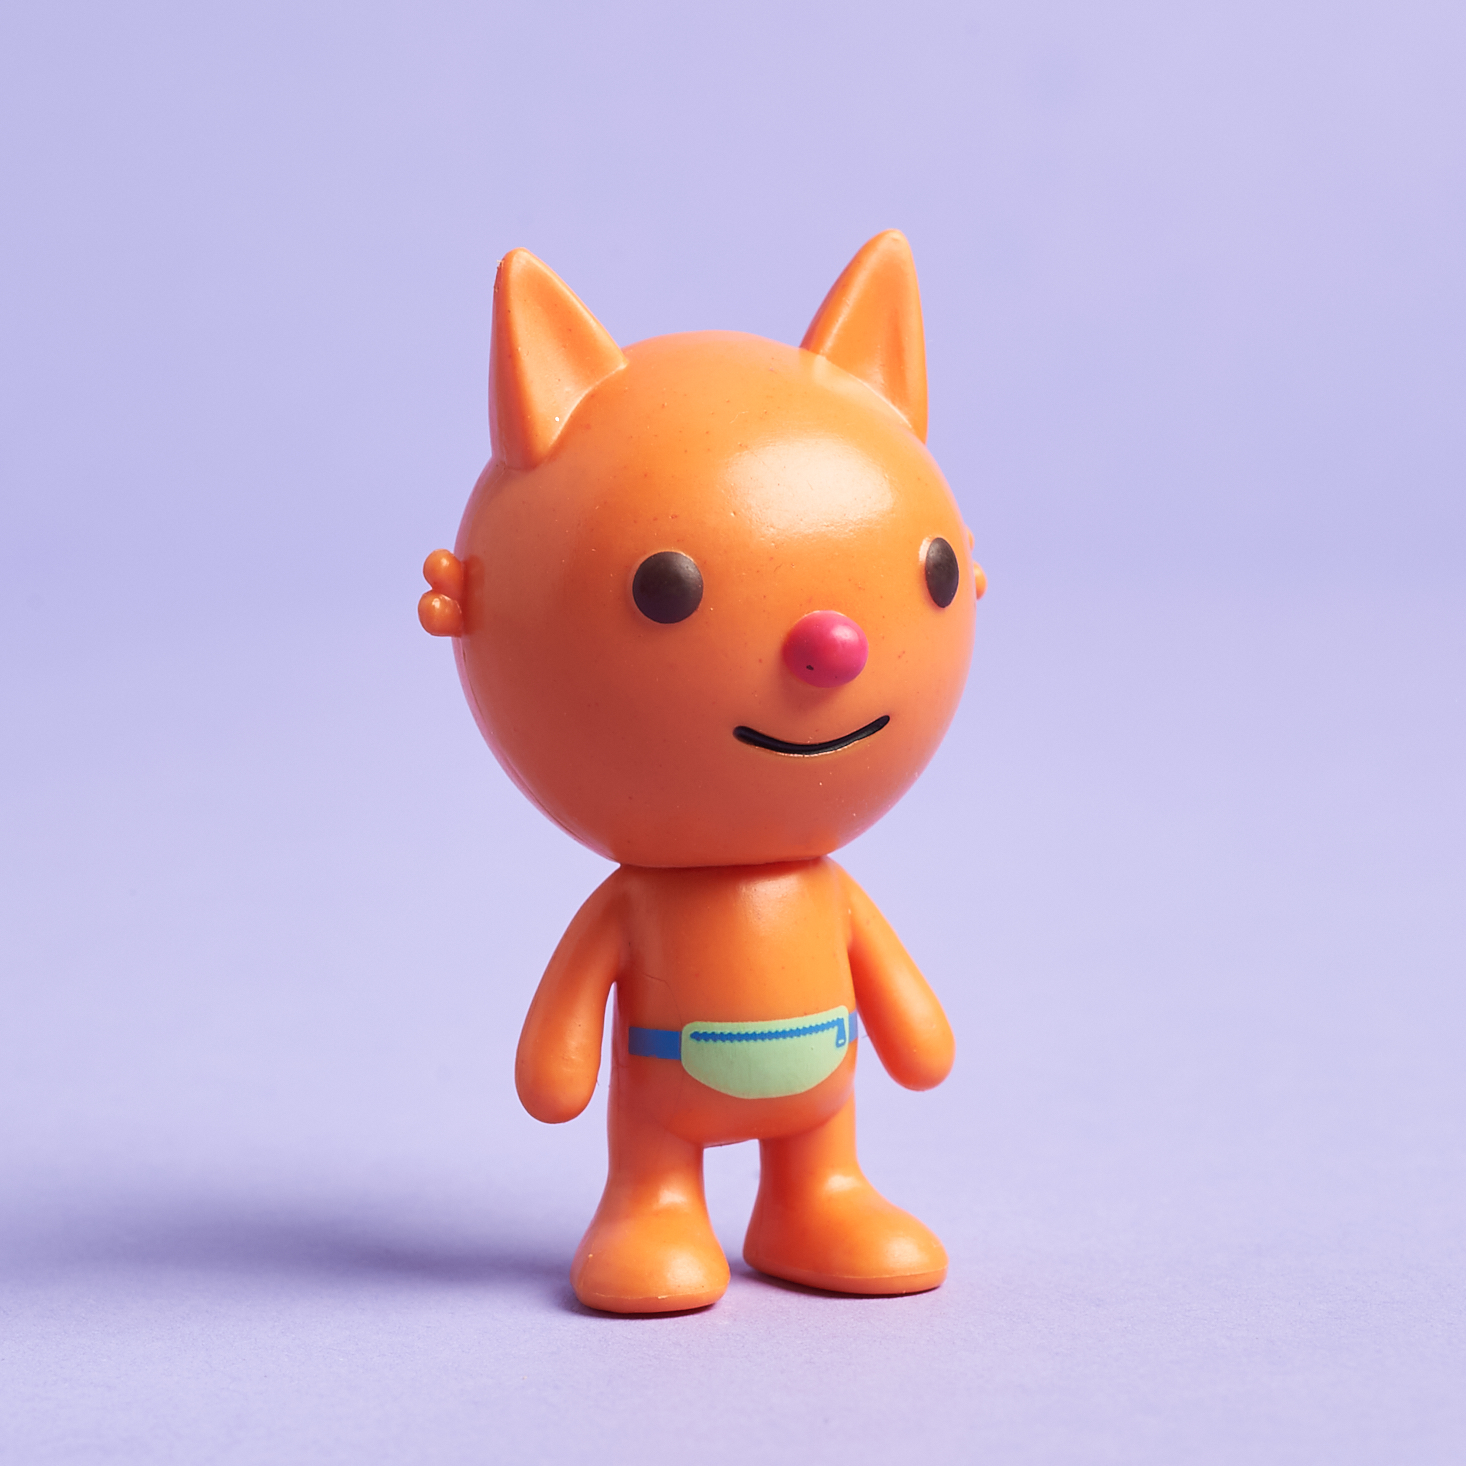 Sago Mini December 2020 cat figure